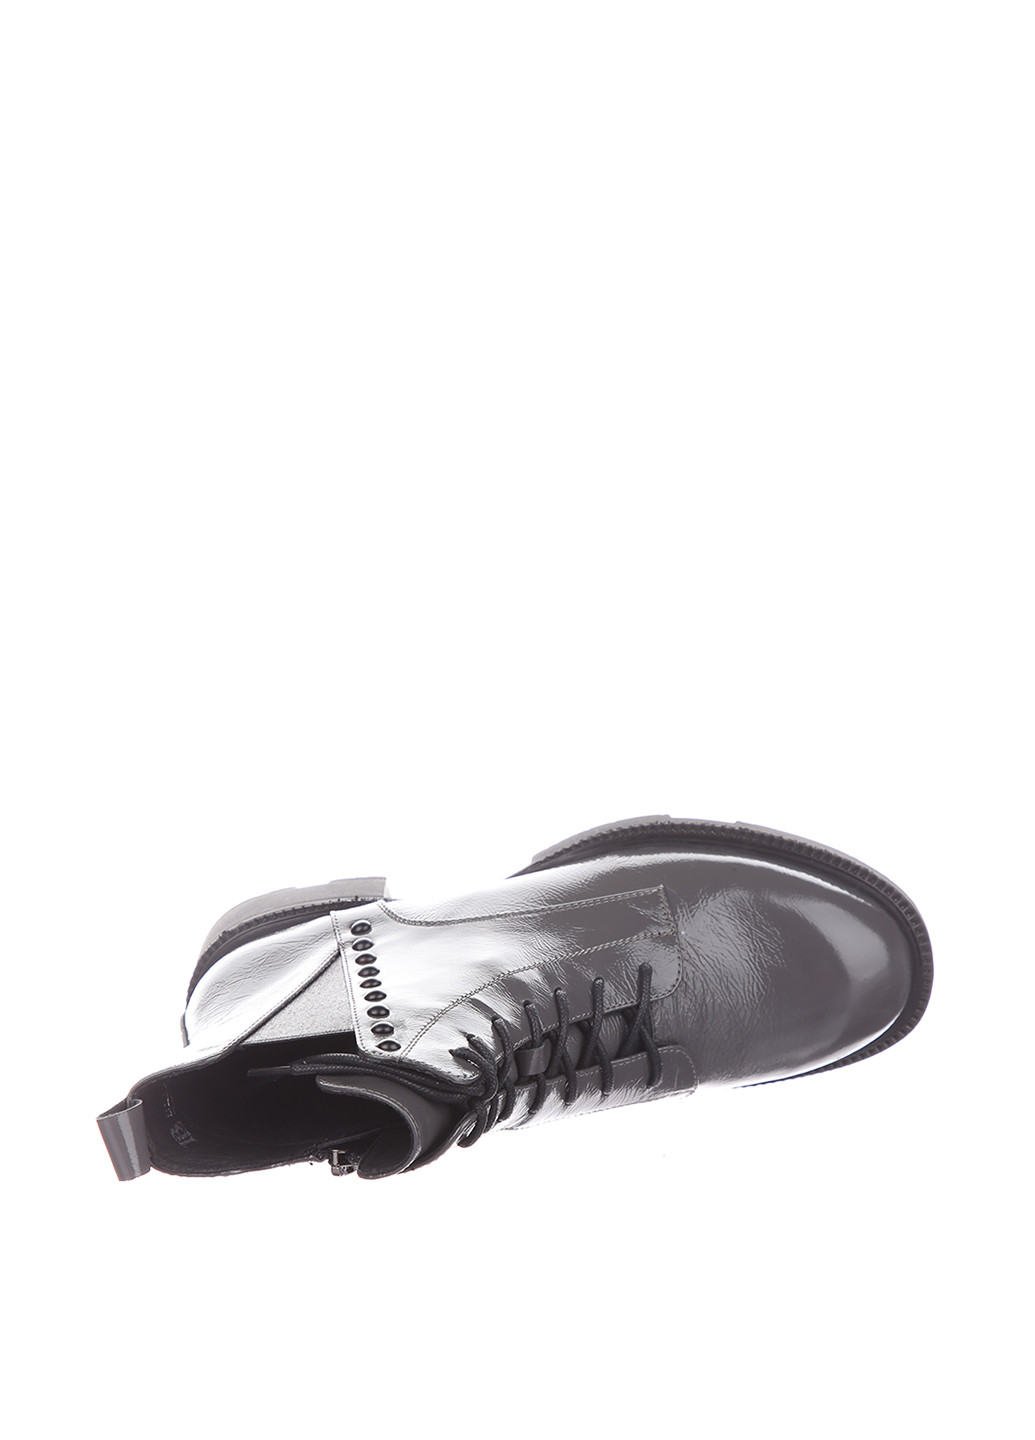 Осенние ботинки Blizzarini с заклепками, лаковые, со шнуровкой